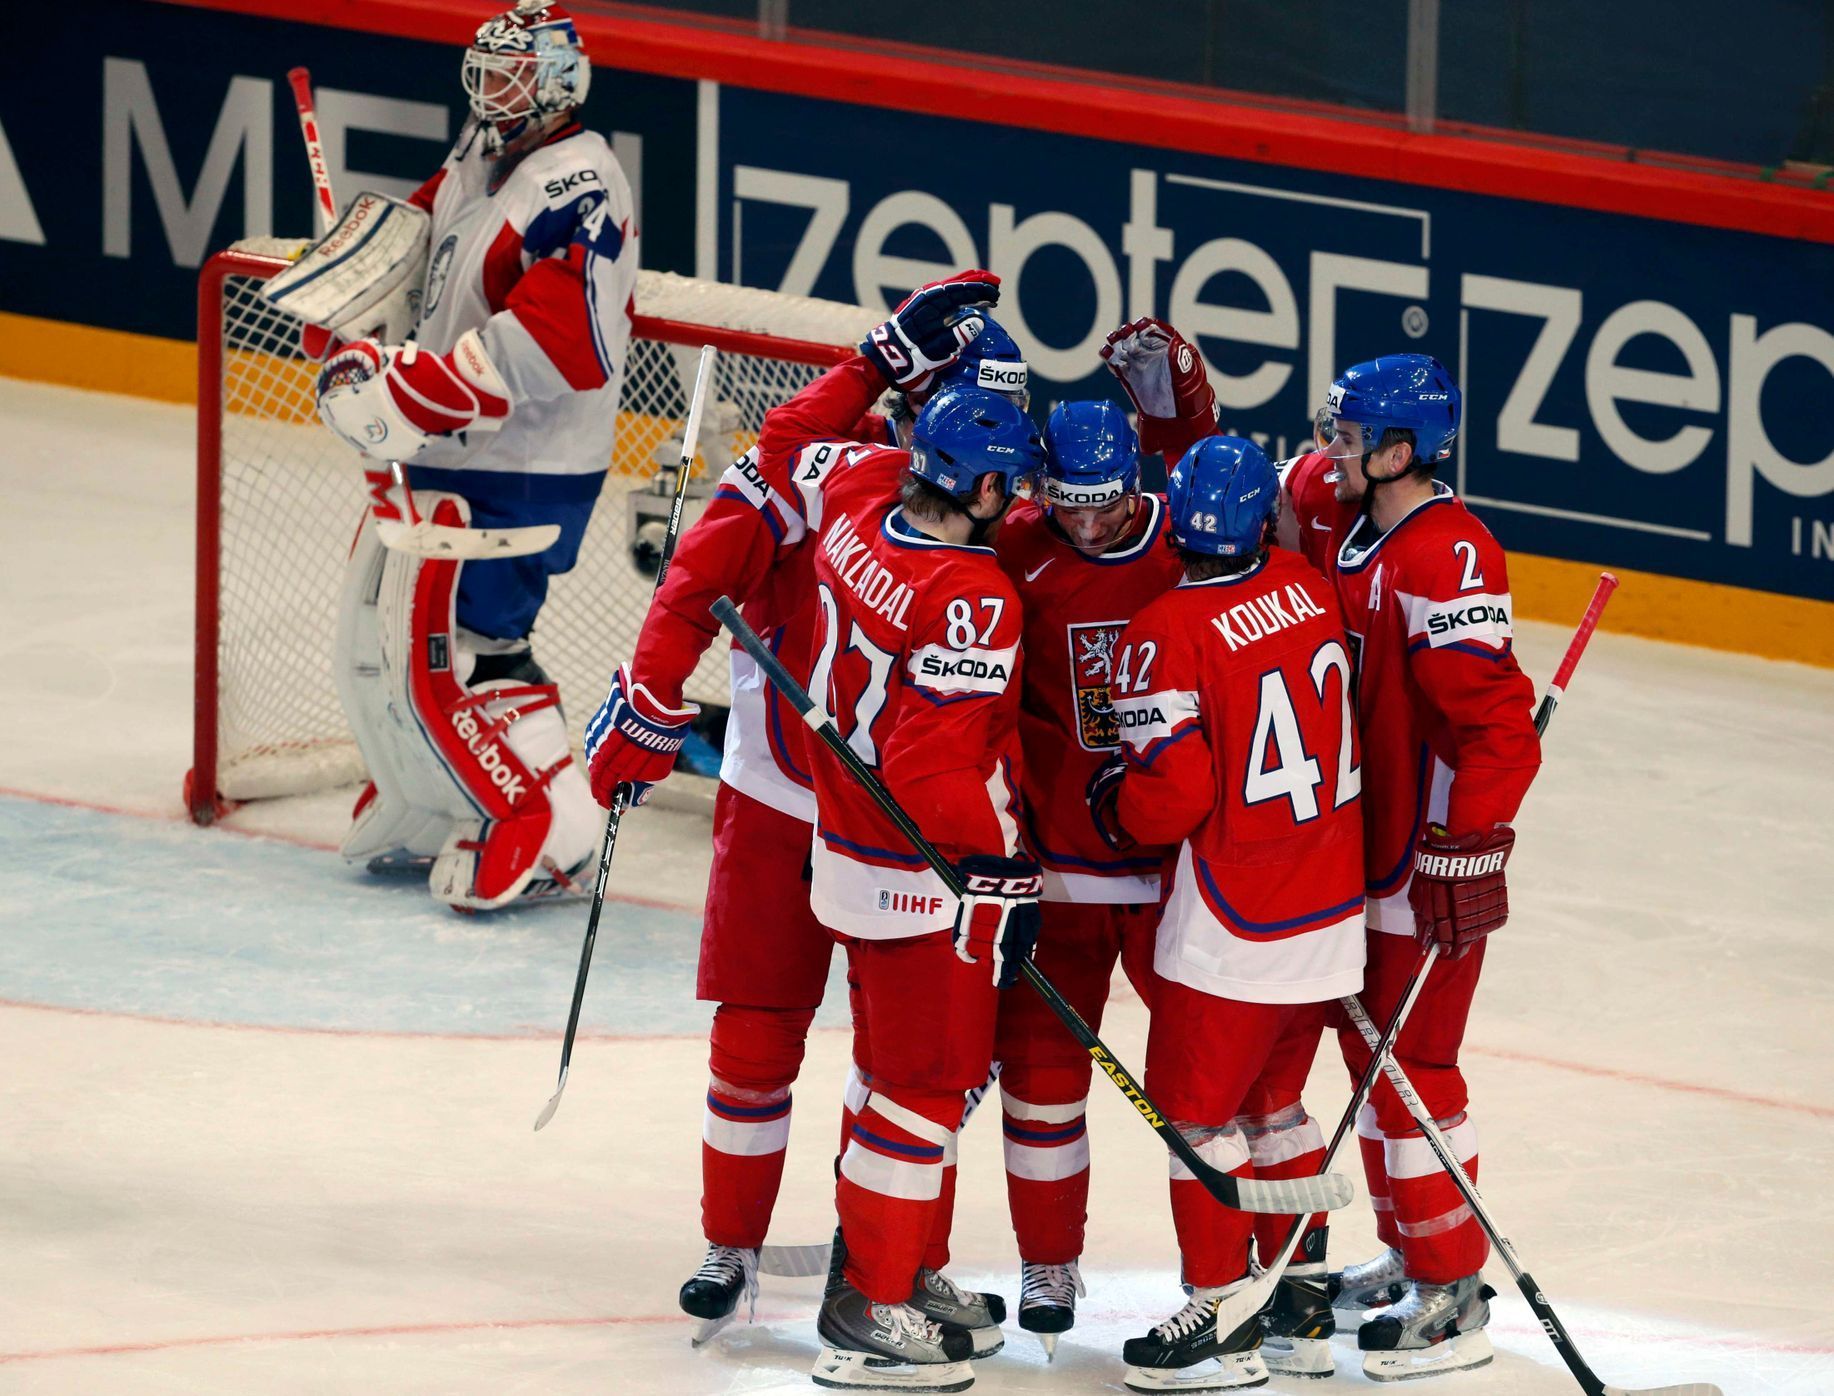 Hokej, MS 2013: Česko - Norsko: česká radost